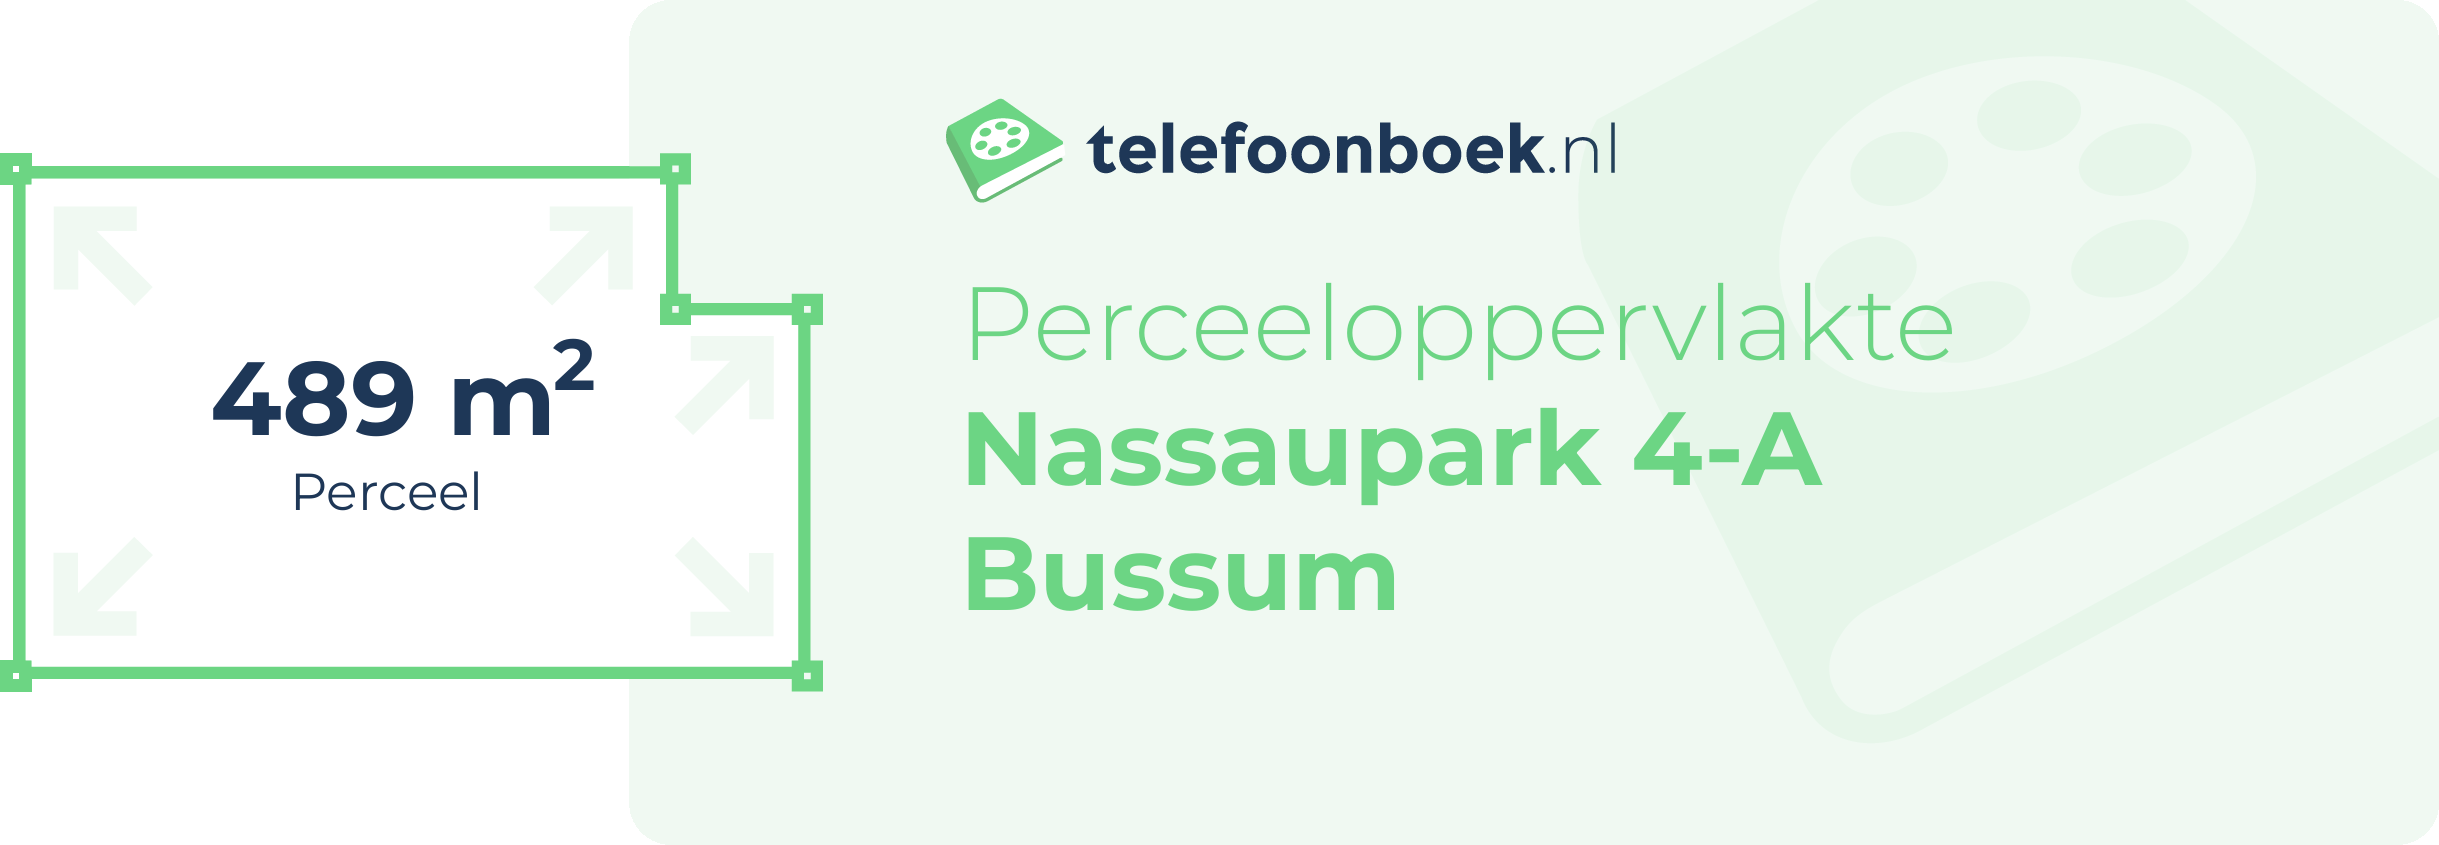 Perceeloppervlakte Nassaupark 4-A Bussum